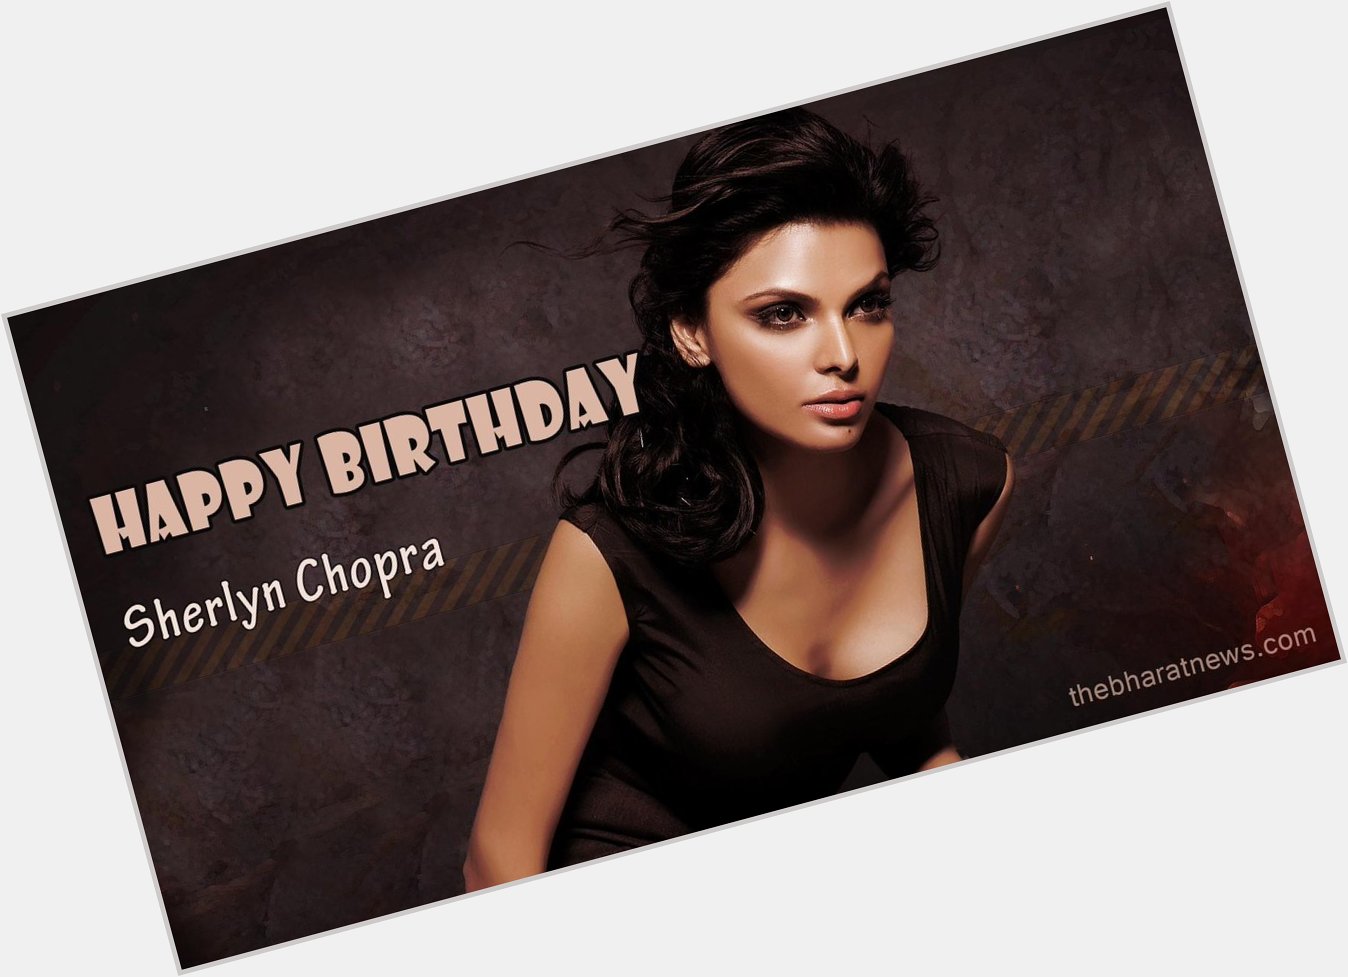  Wishing Sherlyn Chopra a Very Happy Birthday...  